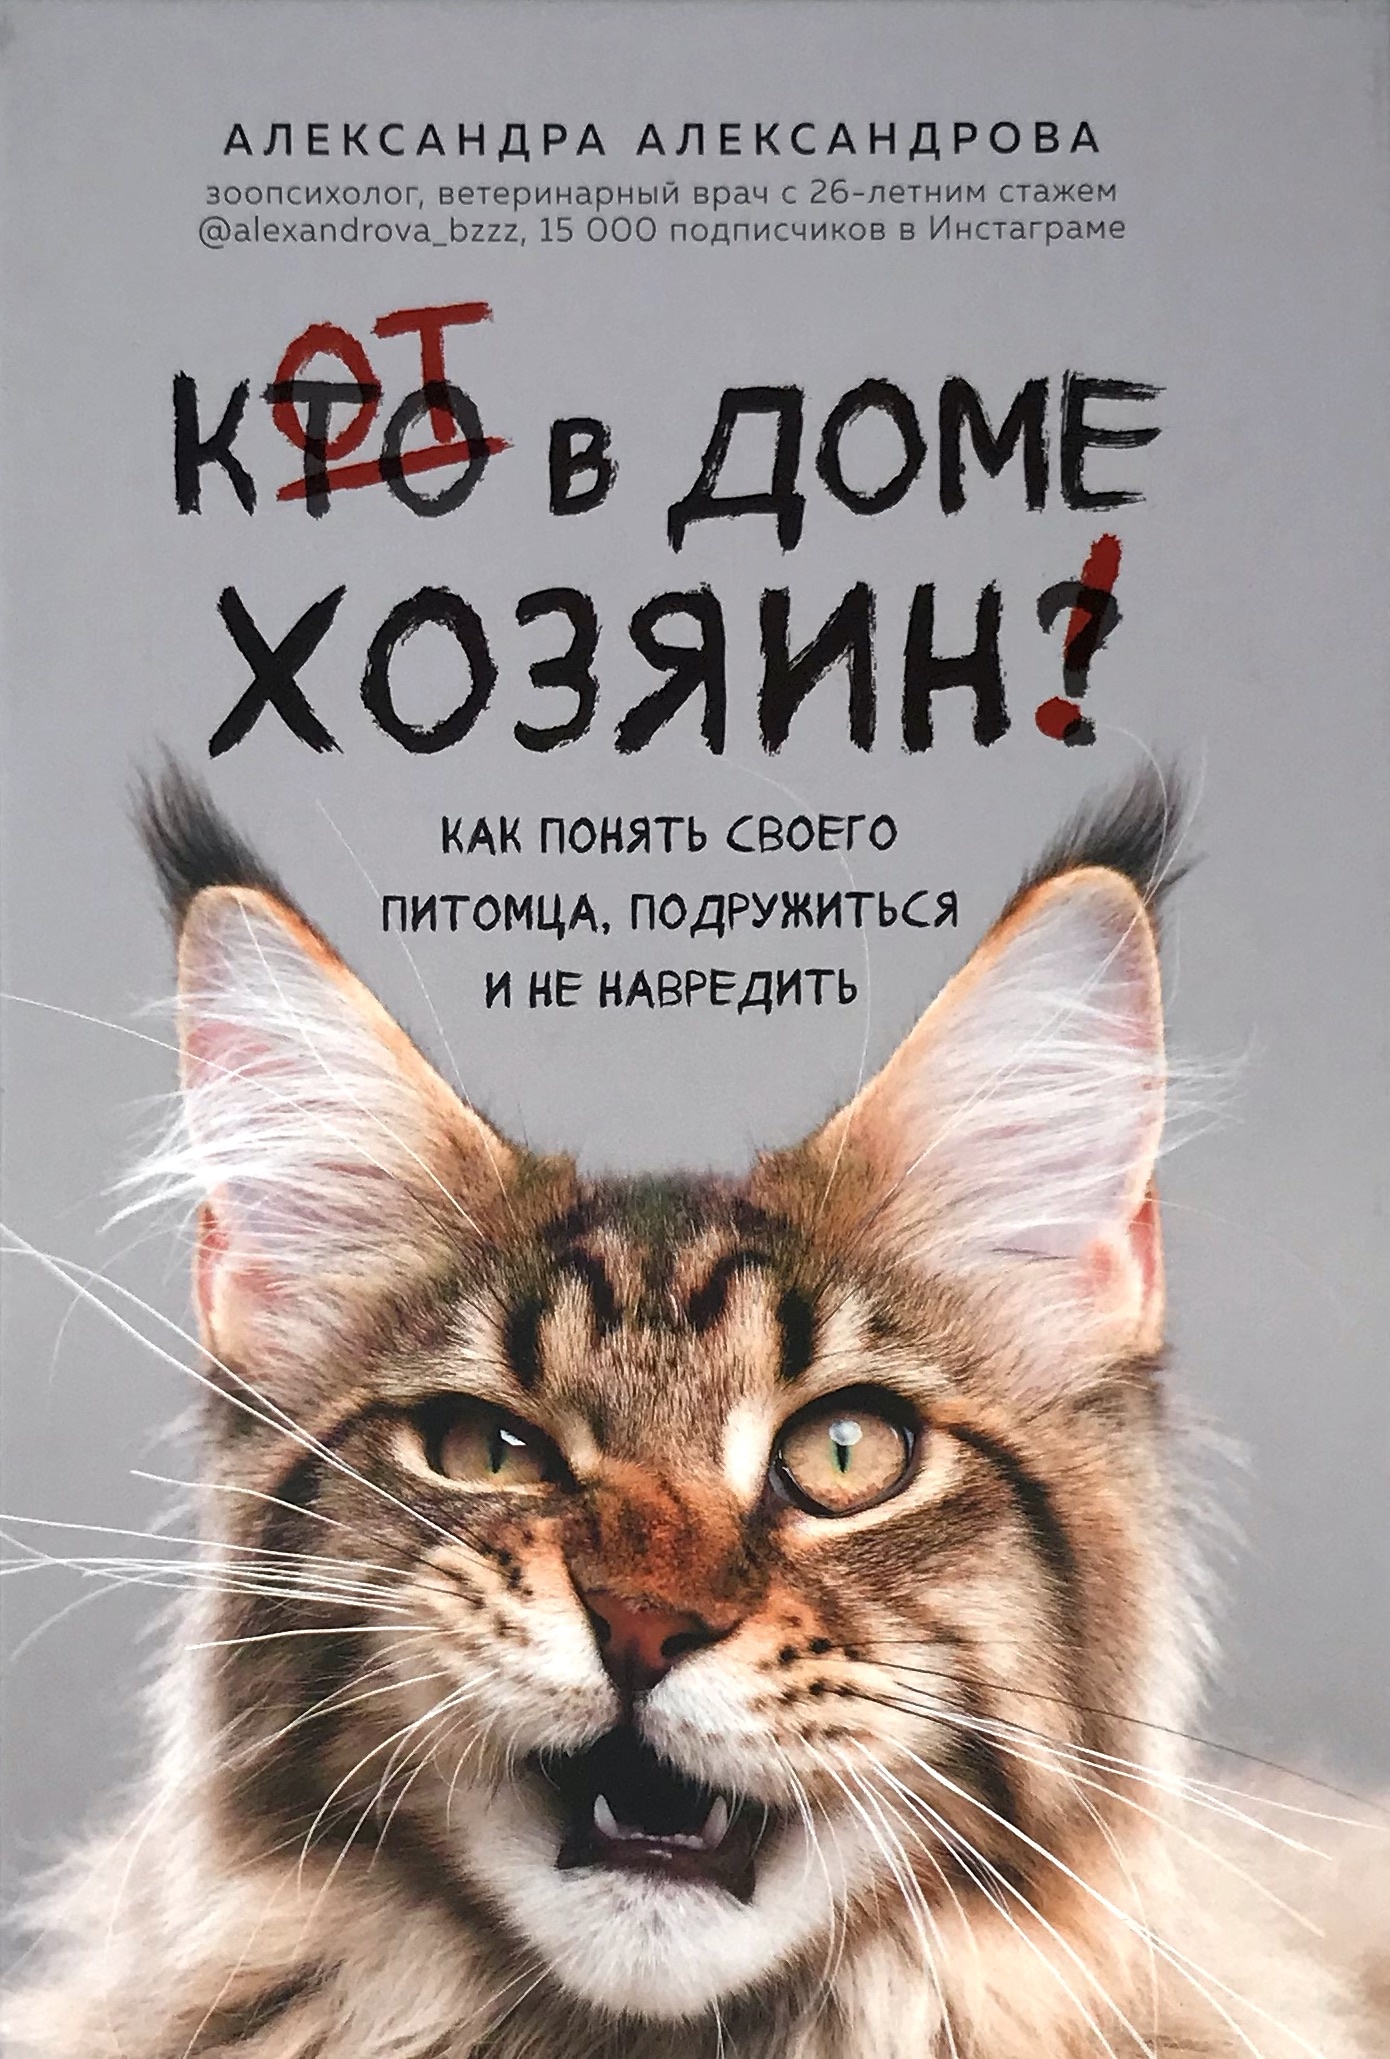 Кот в доме хозяин! Как понять своего питомца, подружиться и не навредить. Автор — Александра Александрова. 